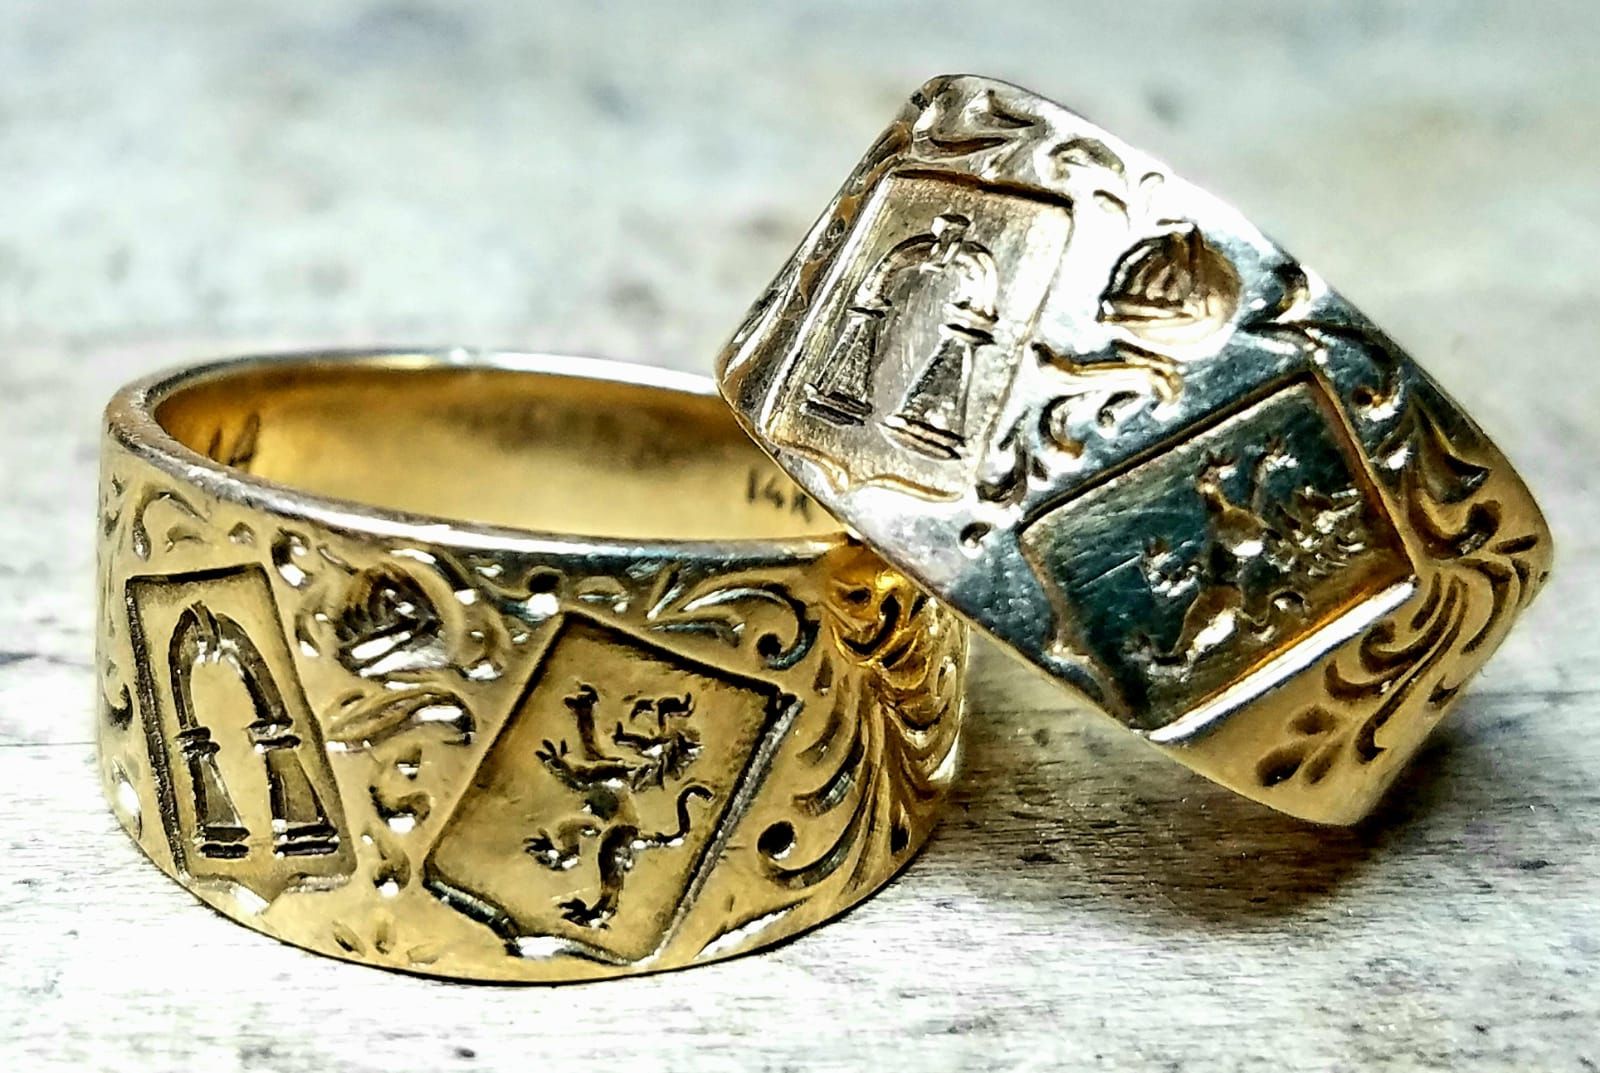 Jas van Arm Ring Familie Crest Ring Solid 925 Sterling Zilveren Ring Heraldische Ring Sieraden Ringen Zegelringen Man & Vrouw Aangepaste Signet Ring 